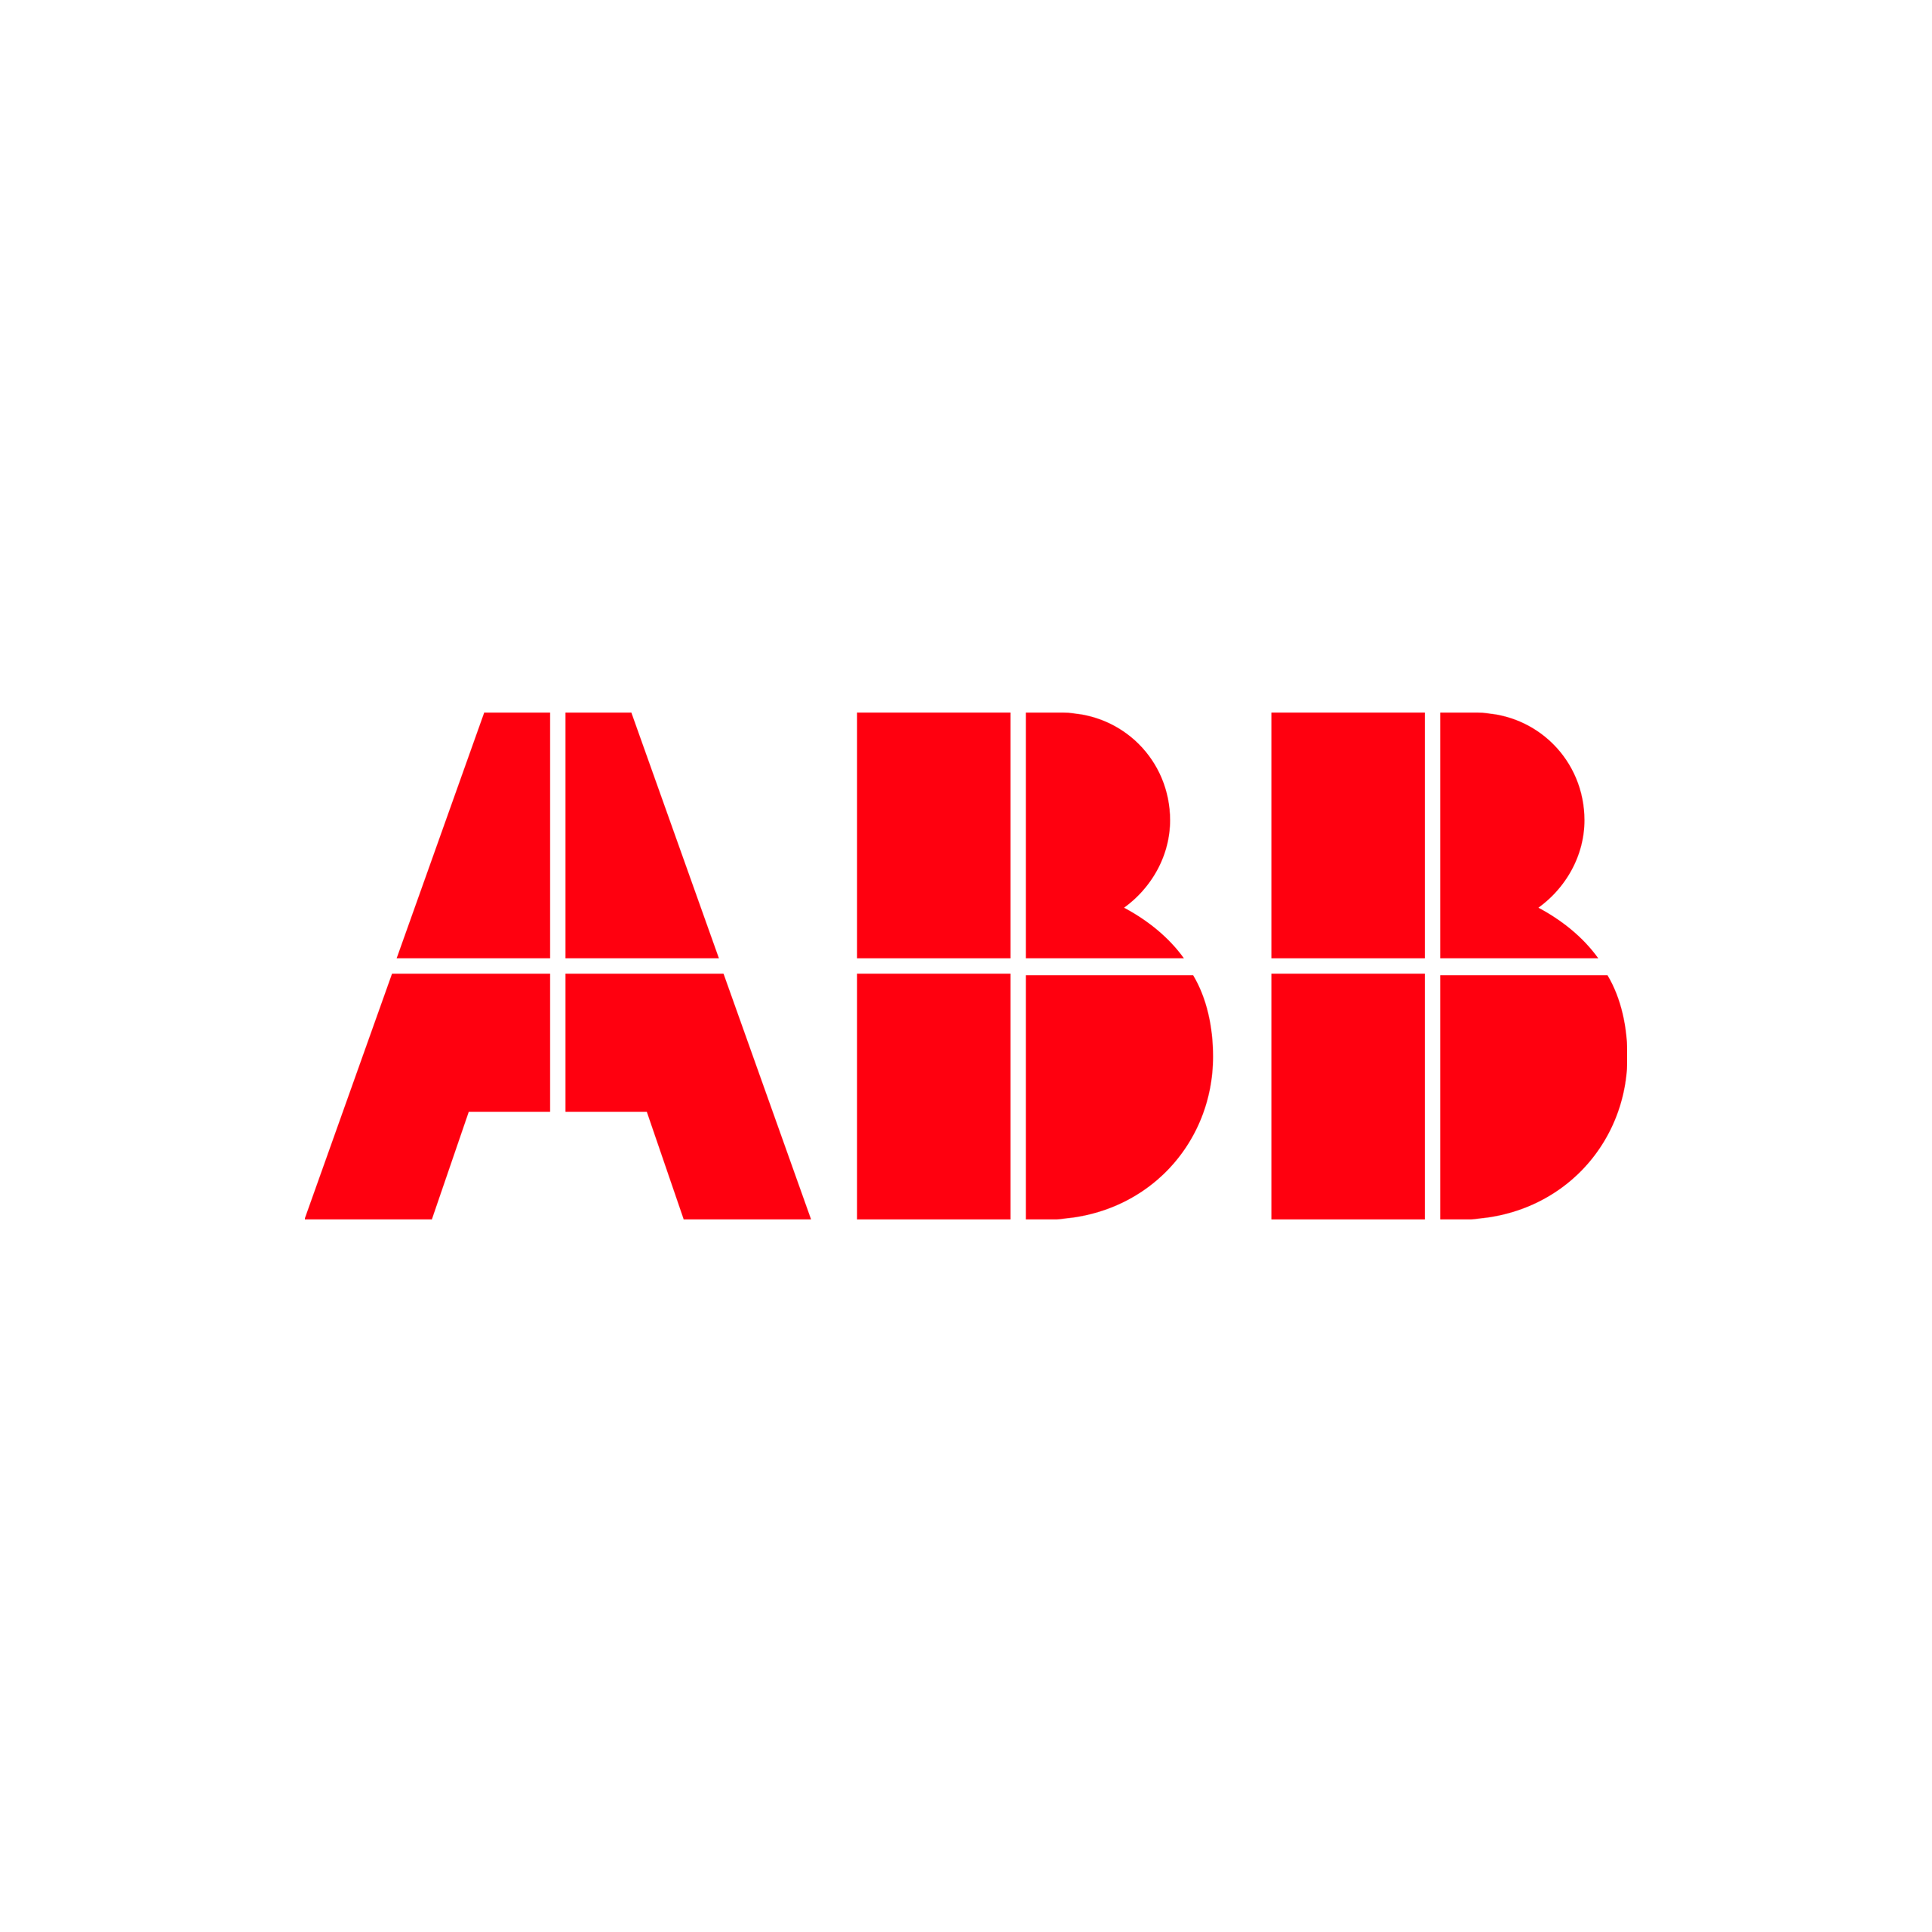 abb_logo